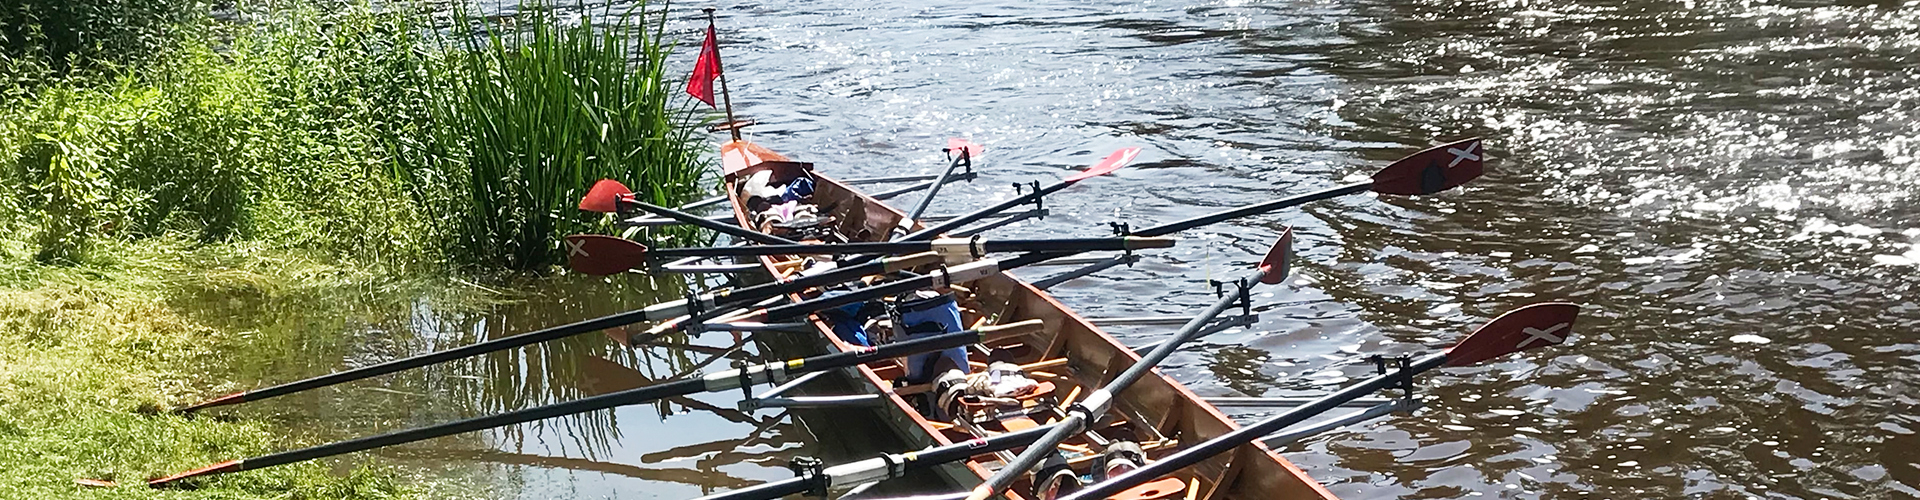 Inn River Race in Passau 2015